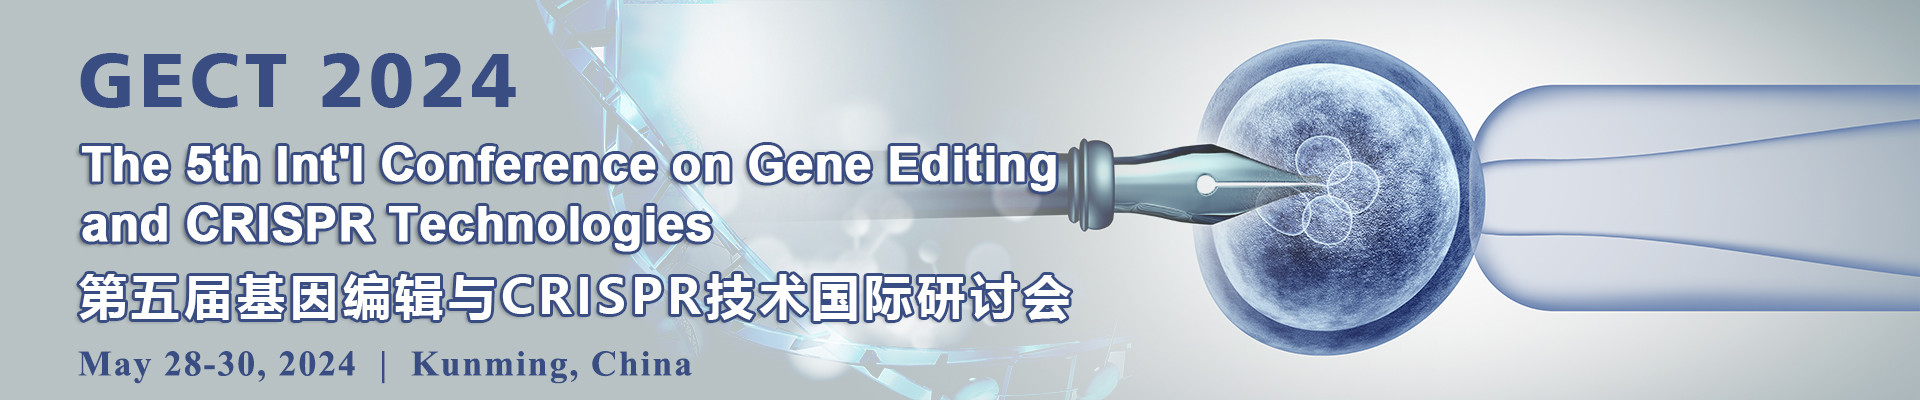 第五屆基因編輯與CRISPR技術國際研討會(GECT 2024)